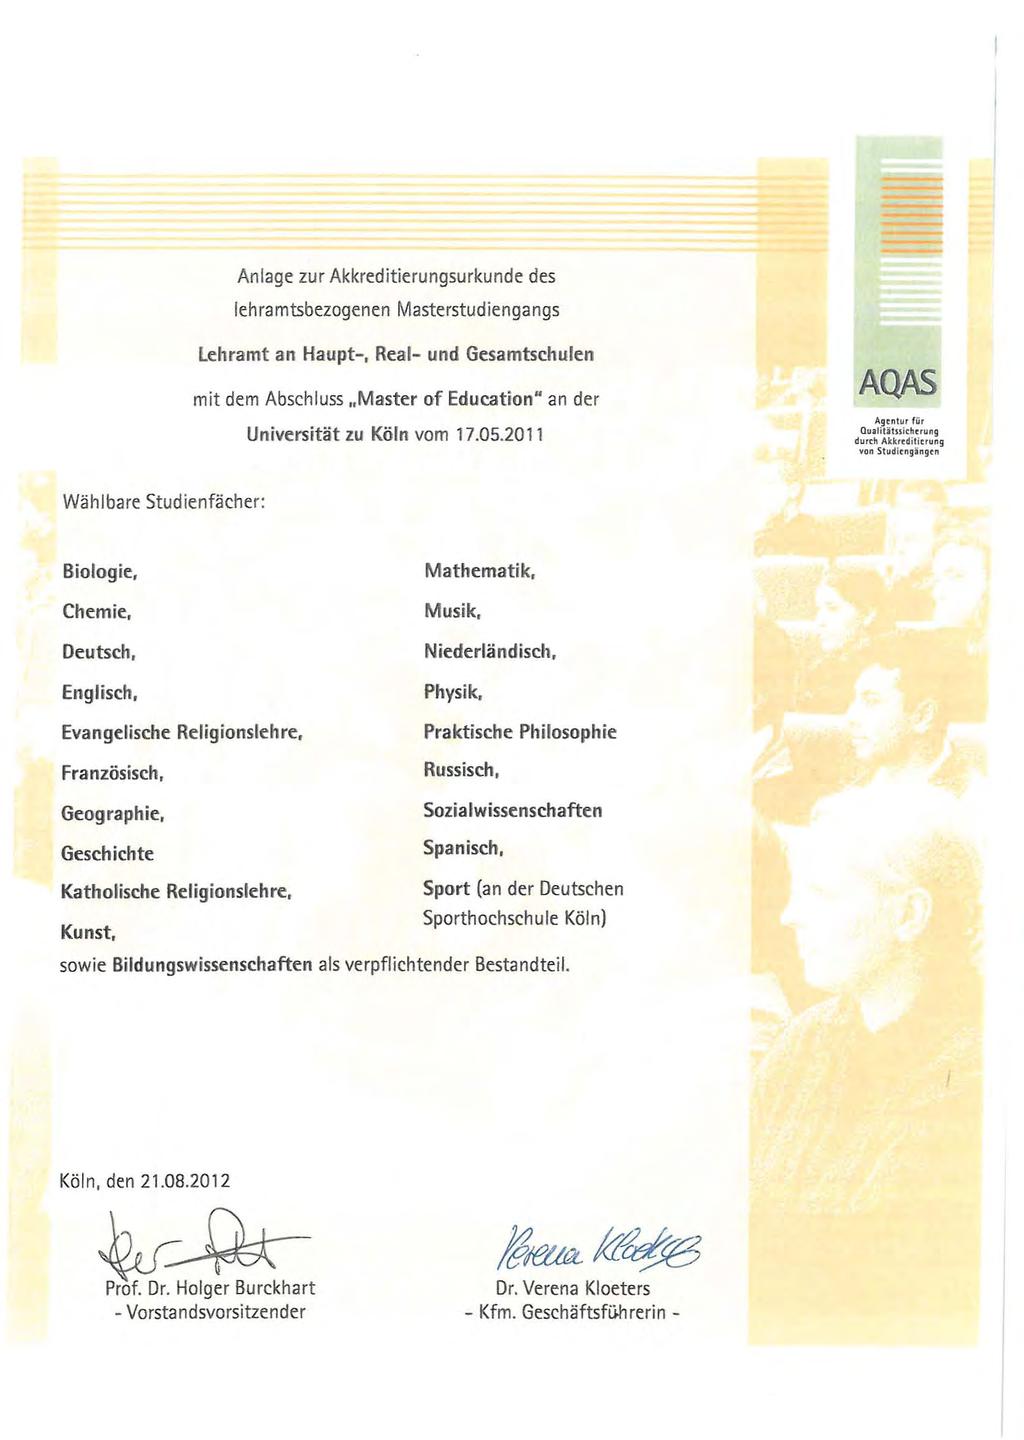 Anlage zur Akkreditierungsurkunde des lehramtsbezogenen Masterstudiengangs lehramt an Haupt-. Real- und Gesamtschulen mit dem Abschluss "Master of Education" an der Universität zu Köln vom 17.05.